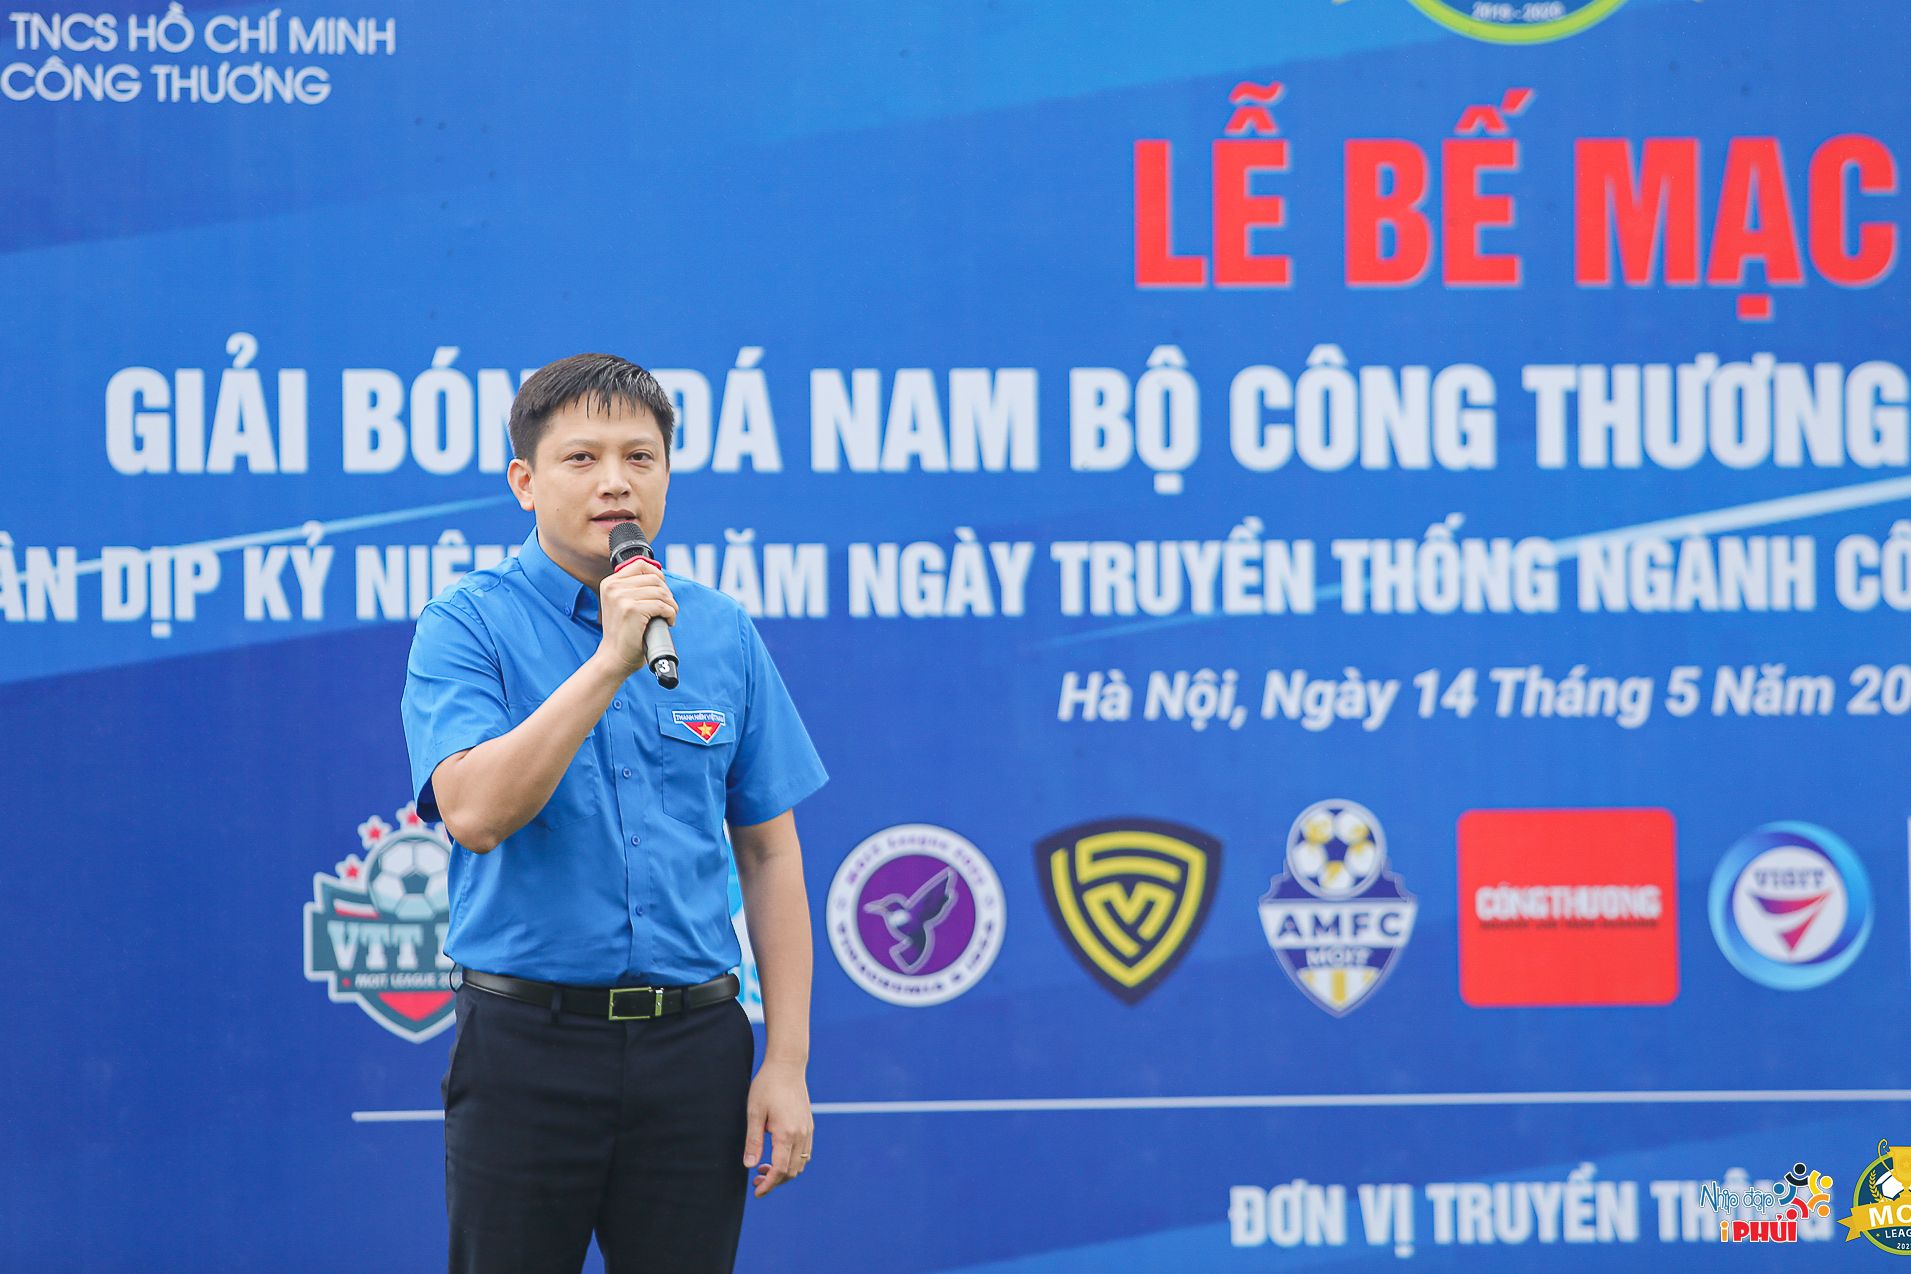 Bí thư Đoàn Thanh niên Phạm Khắc Huy gửi lời cảm ơn đến thành viên Ban Tổ chức Giải đấu, các cầu thủ, cổ động viên 11 đội bóng, tổ trọng tài và nhà tài trợ đã góp phần vào thành công rực rỡ của Giải bóng 